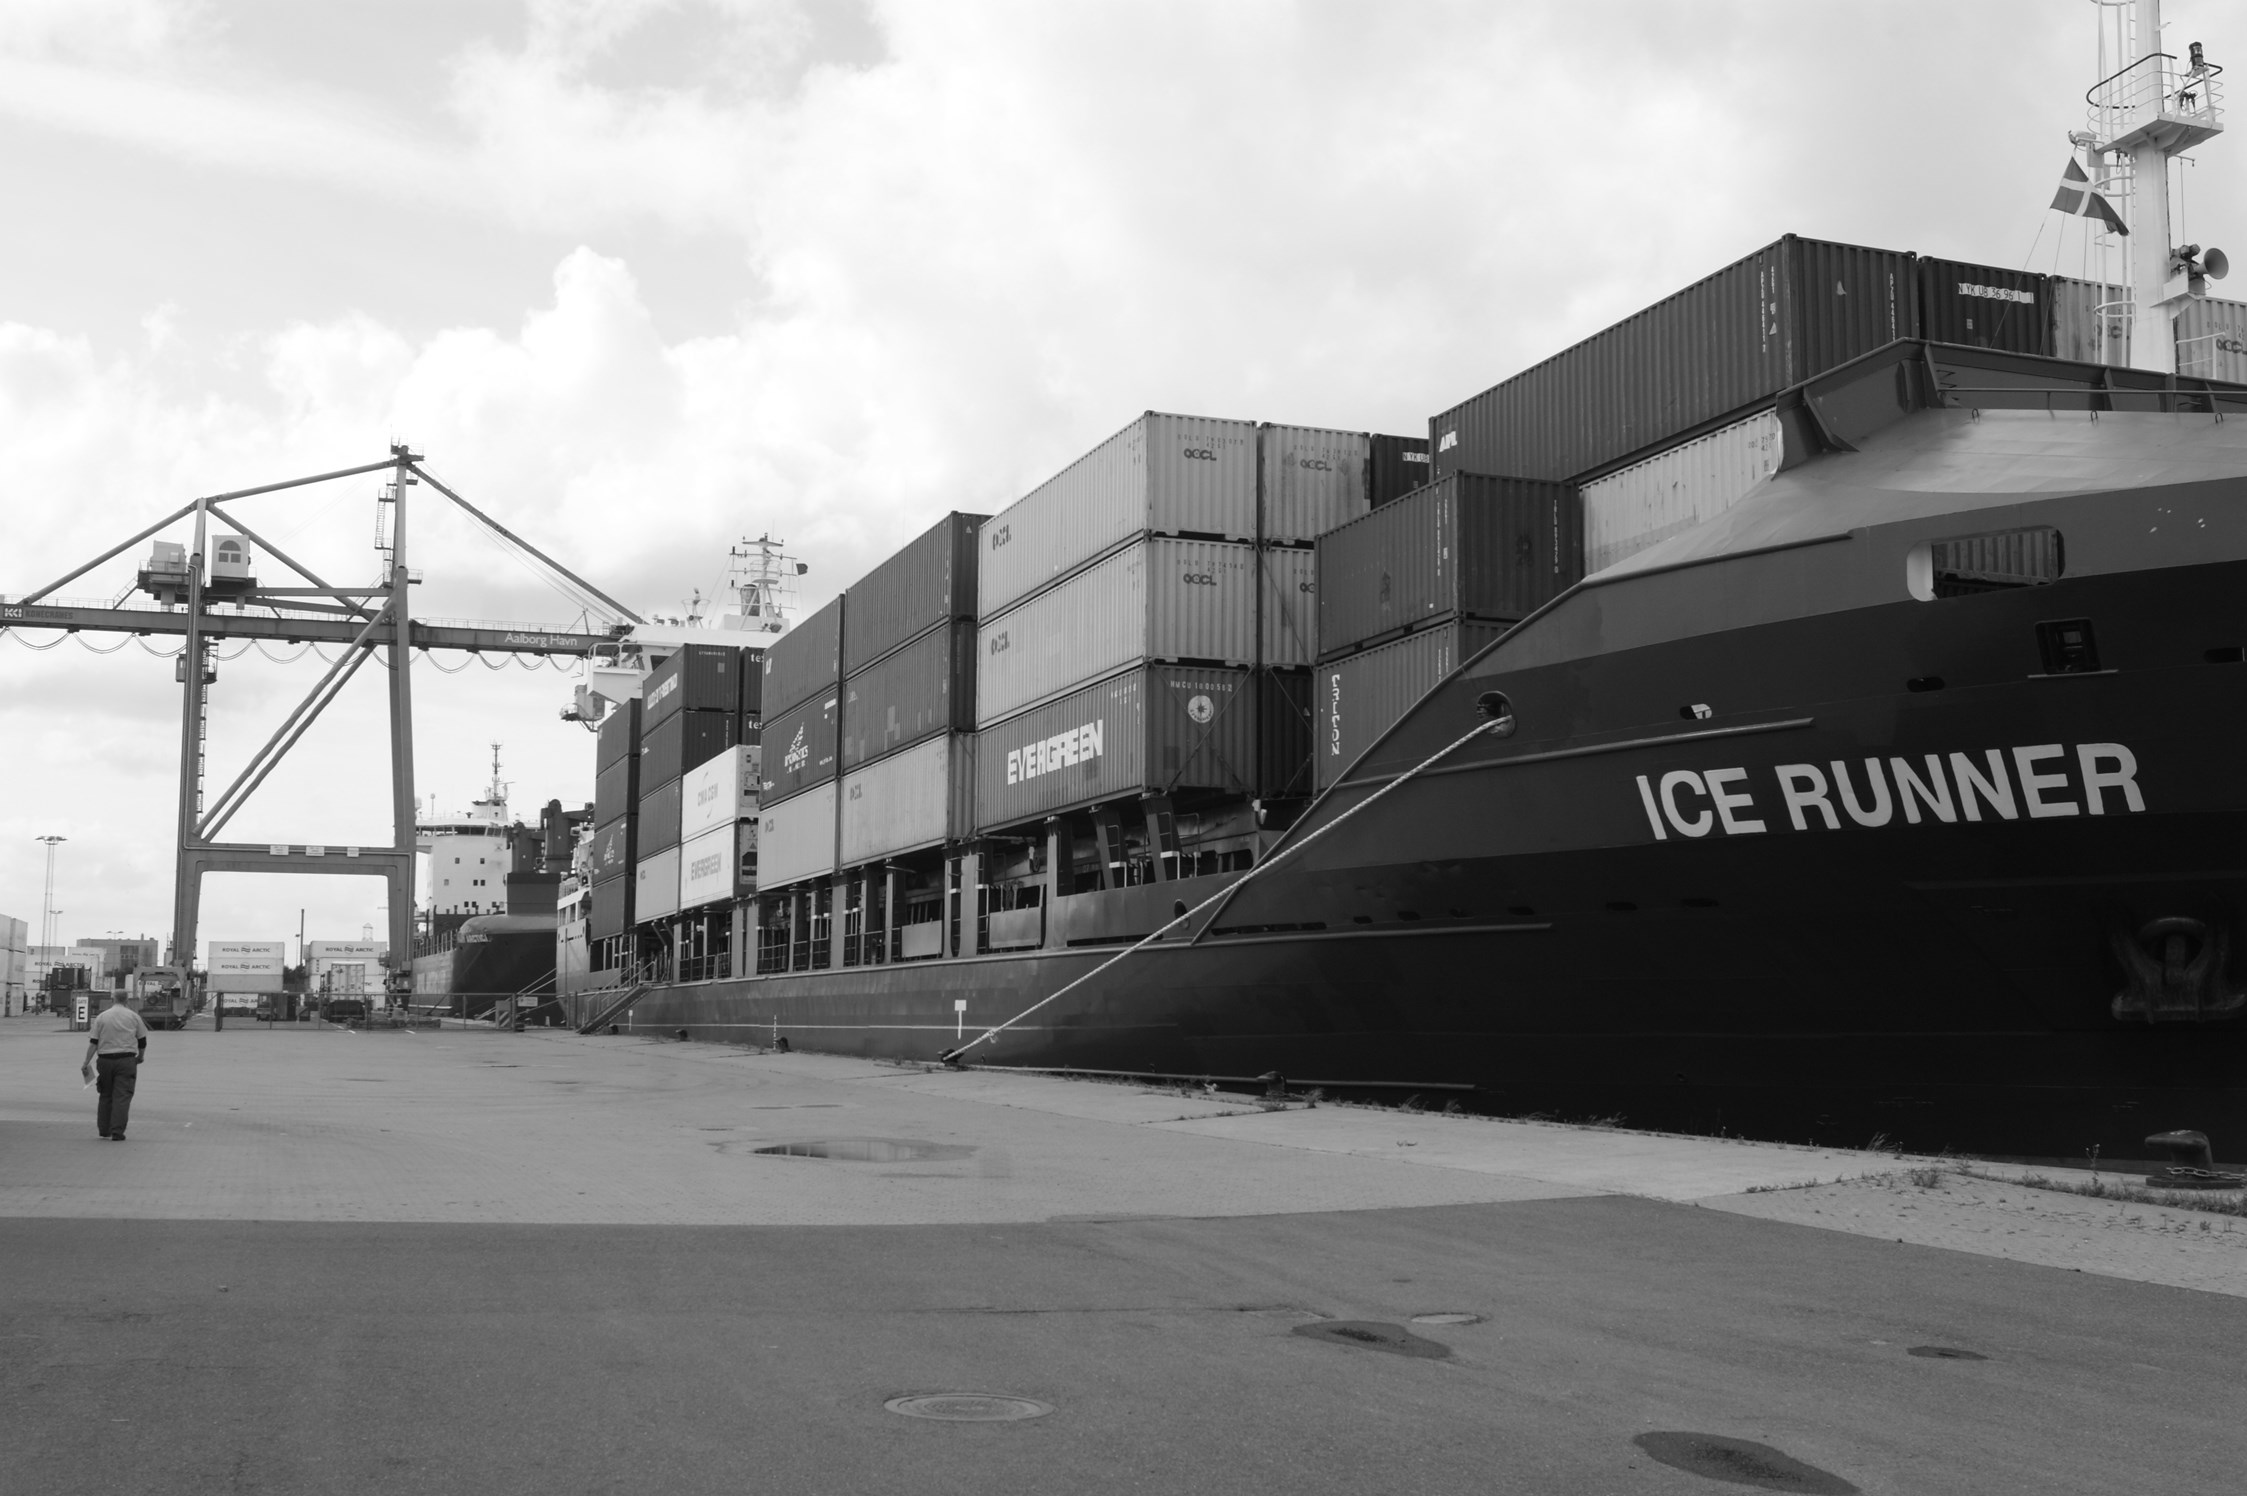 Højeste godsomsætning på Aalborg Havn i syv år I 2015 blev der losset og lastet 2,95 mio. tons gods over kajen på Aalborg Havn.